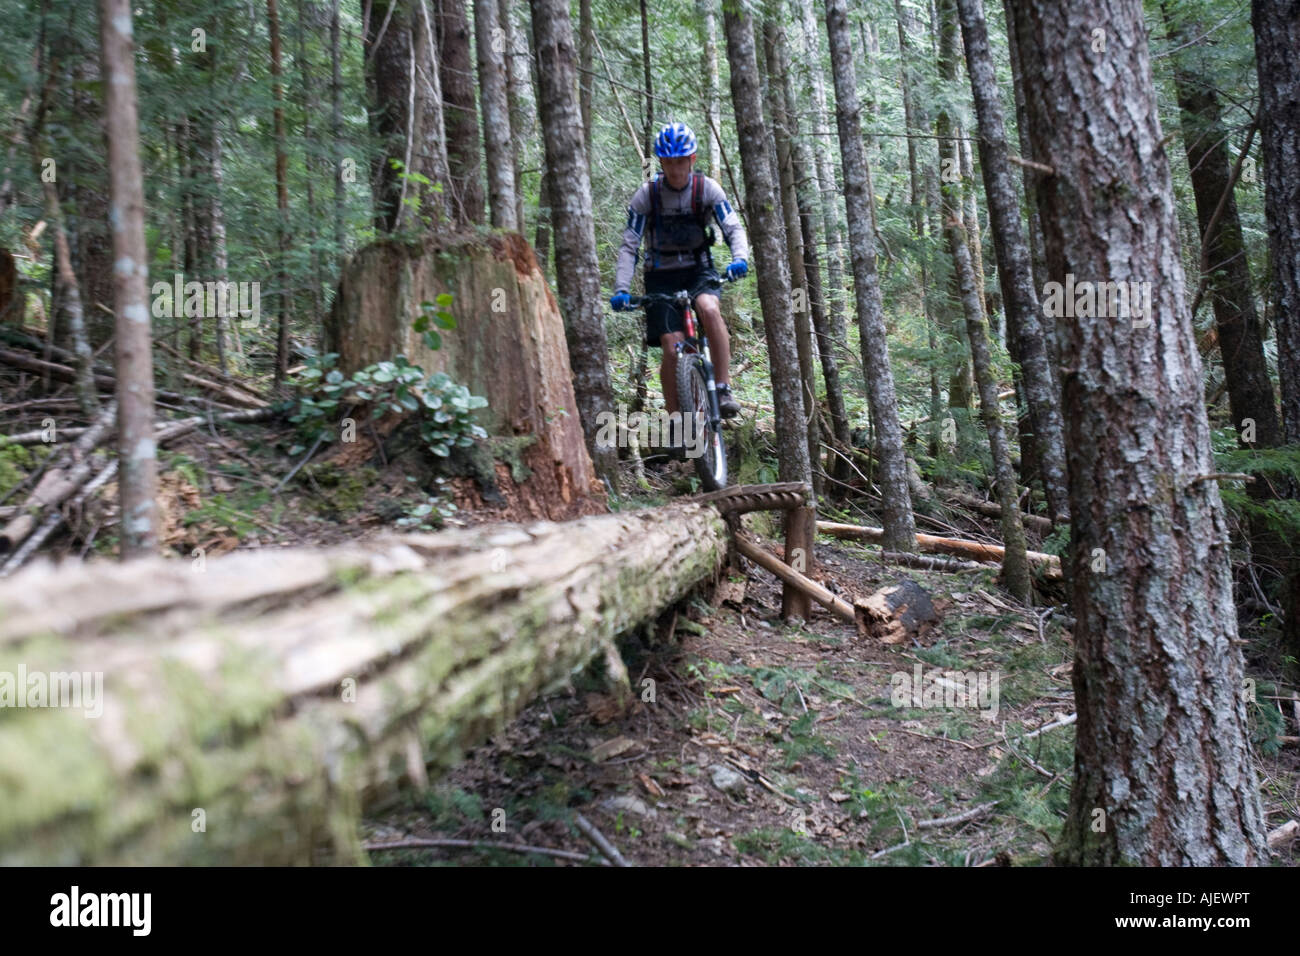 Mountain Biking in Squamish, BC